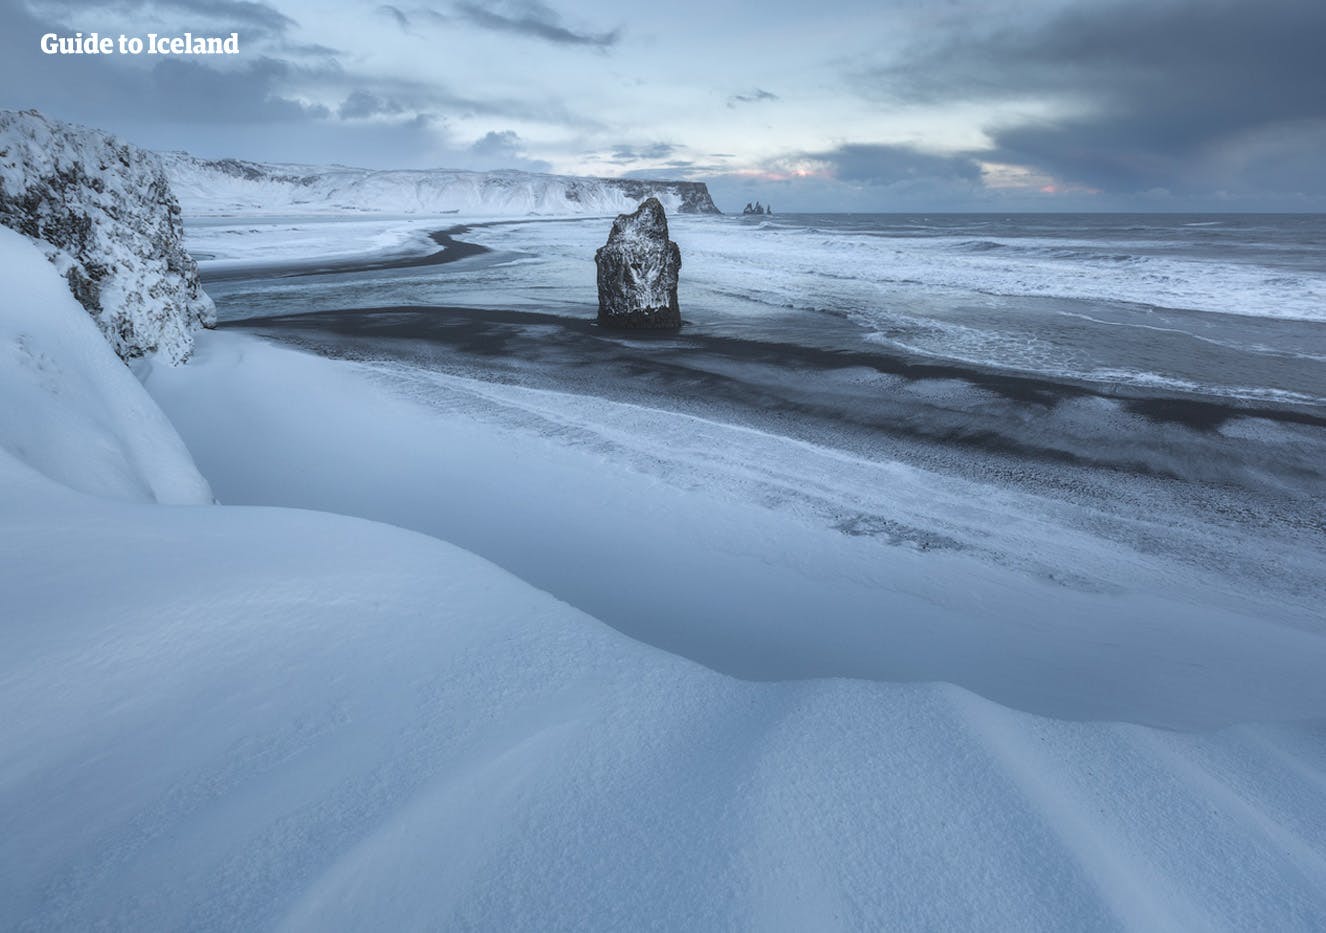 Czarne piaski plaż na południowym wybrzeżu Islandii podczas zimy są widoczne tylko tam, gdzie morze zmywa śnieg.